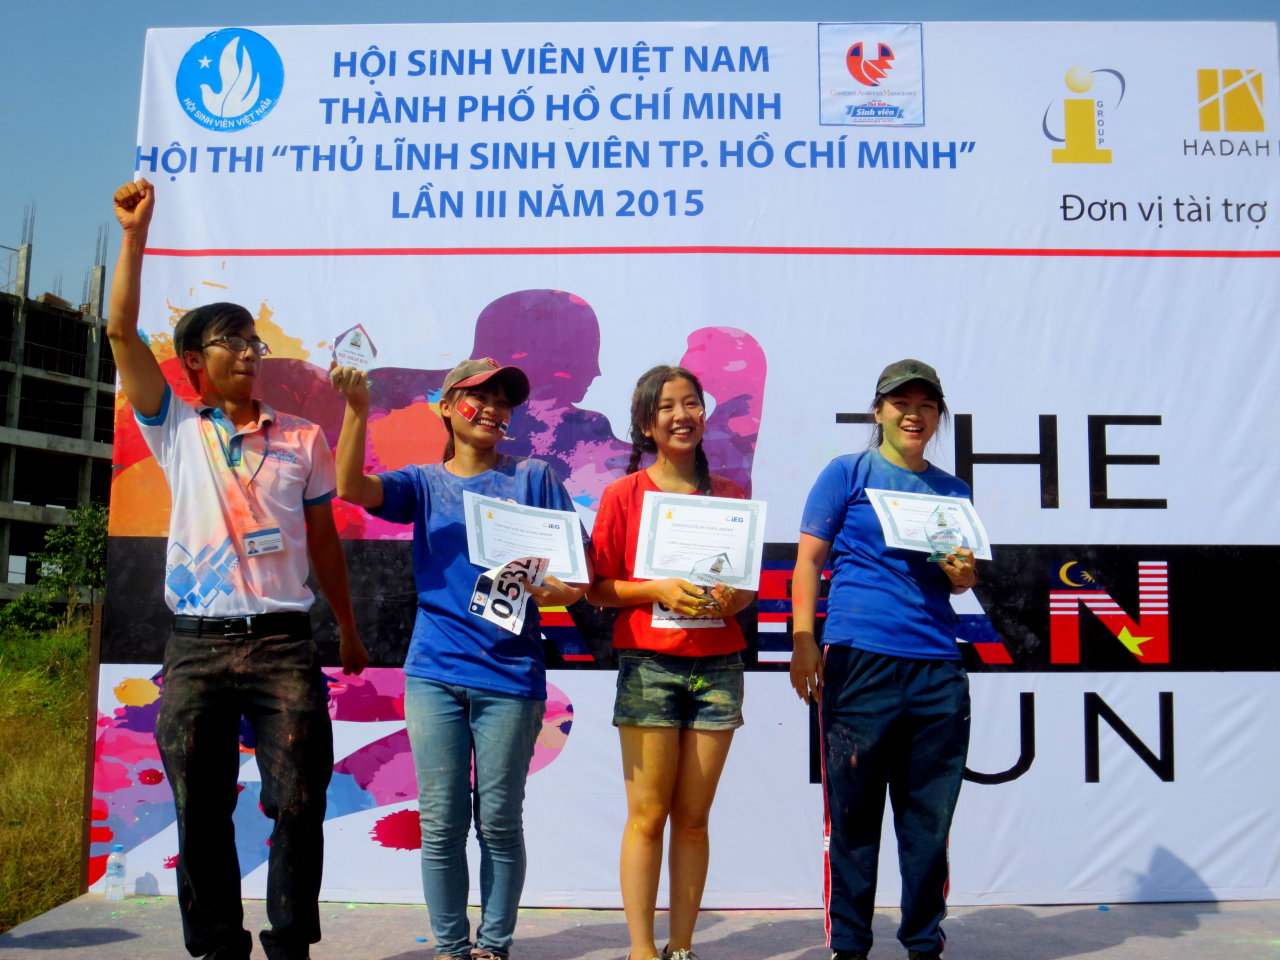 Ba sinh viên nhận học bổng toàn phần của trung tâm anh ngữ IG trong cuộc thi ảnh đẹp về “The Asean run” - Ảnh: Minh Huyền